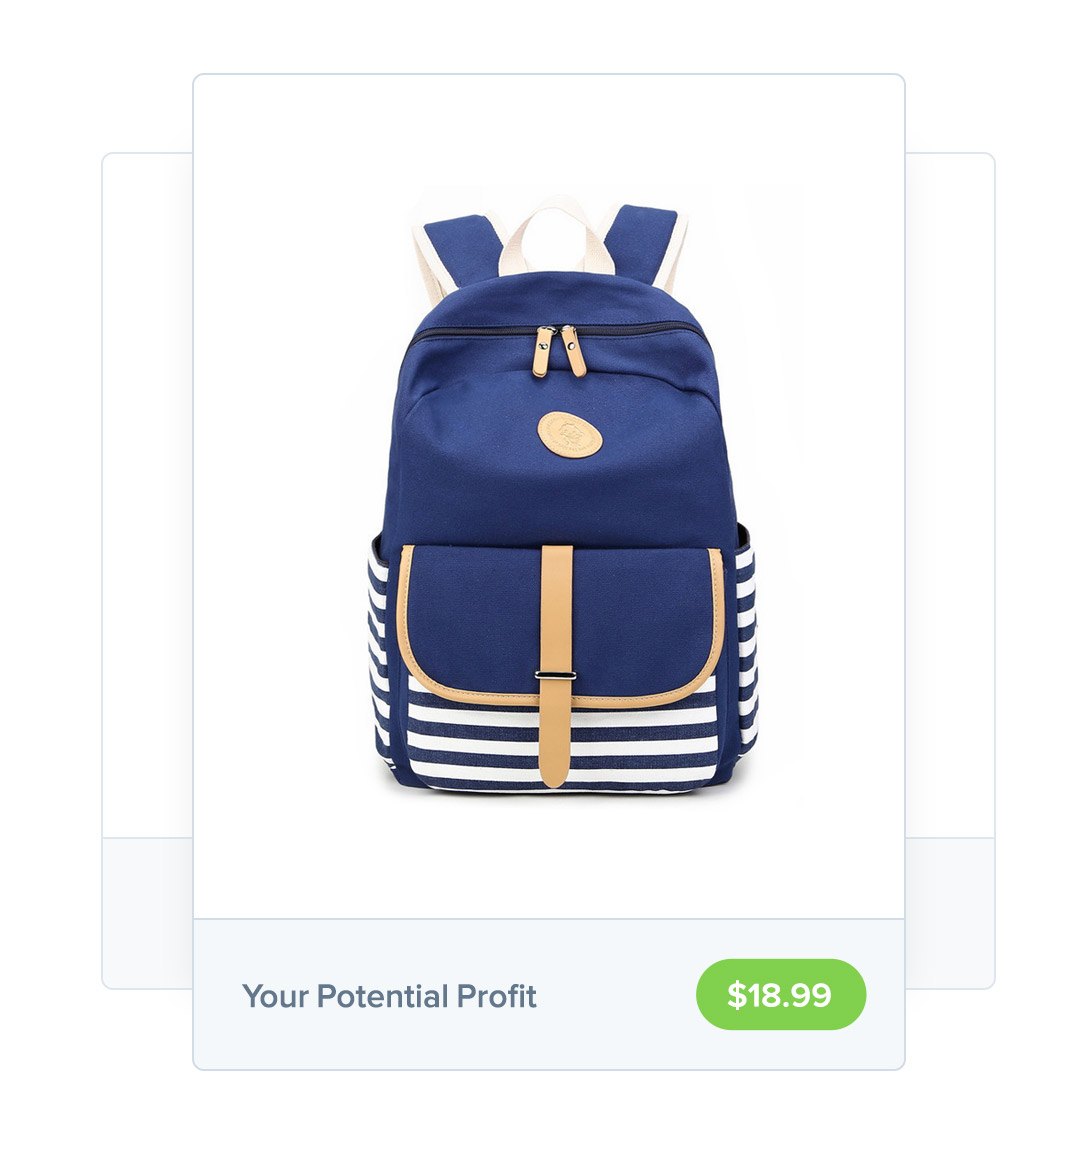 sell backpacks online